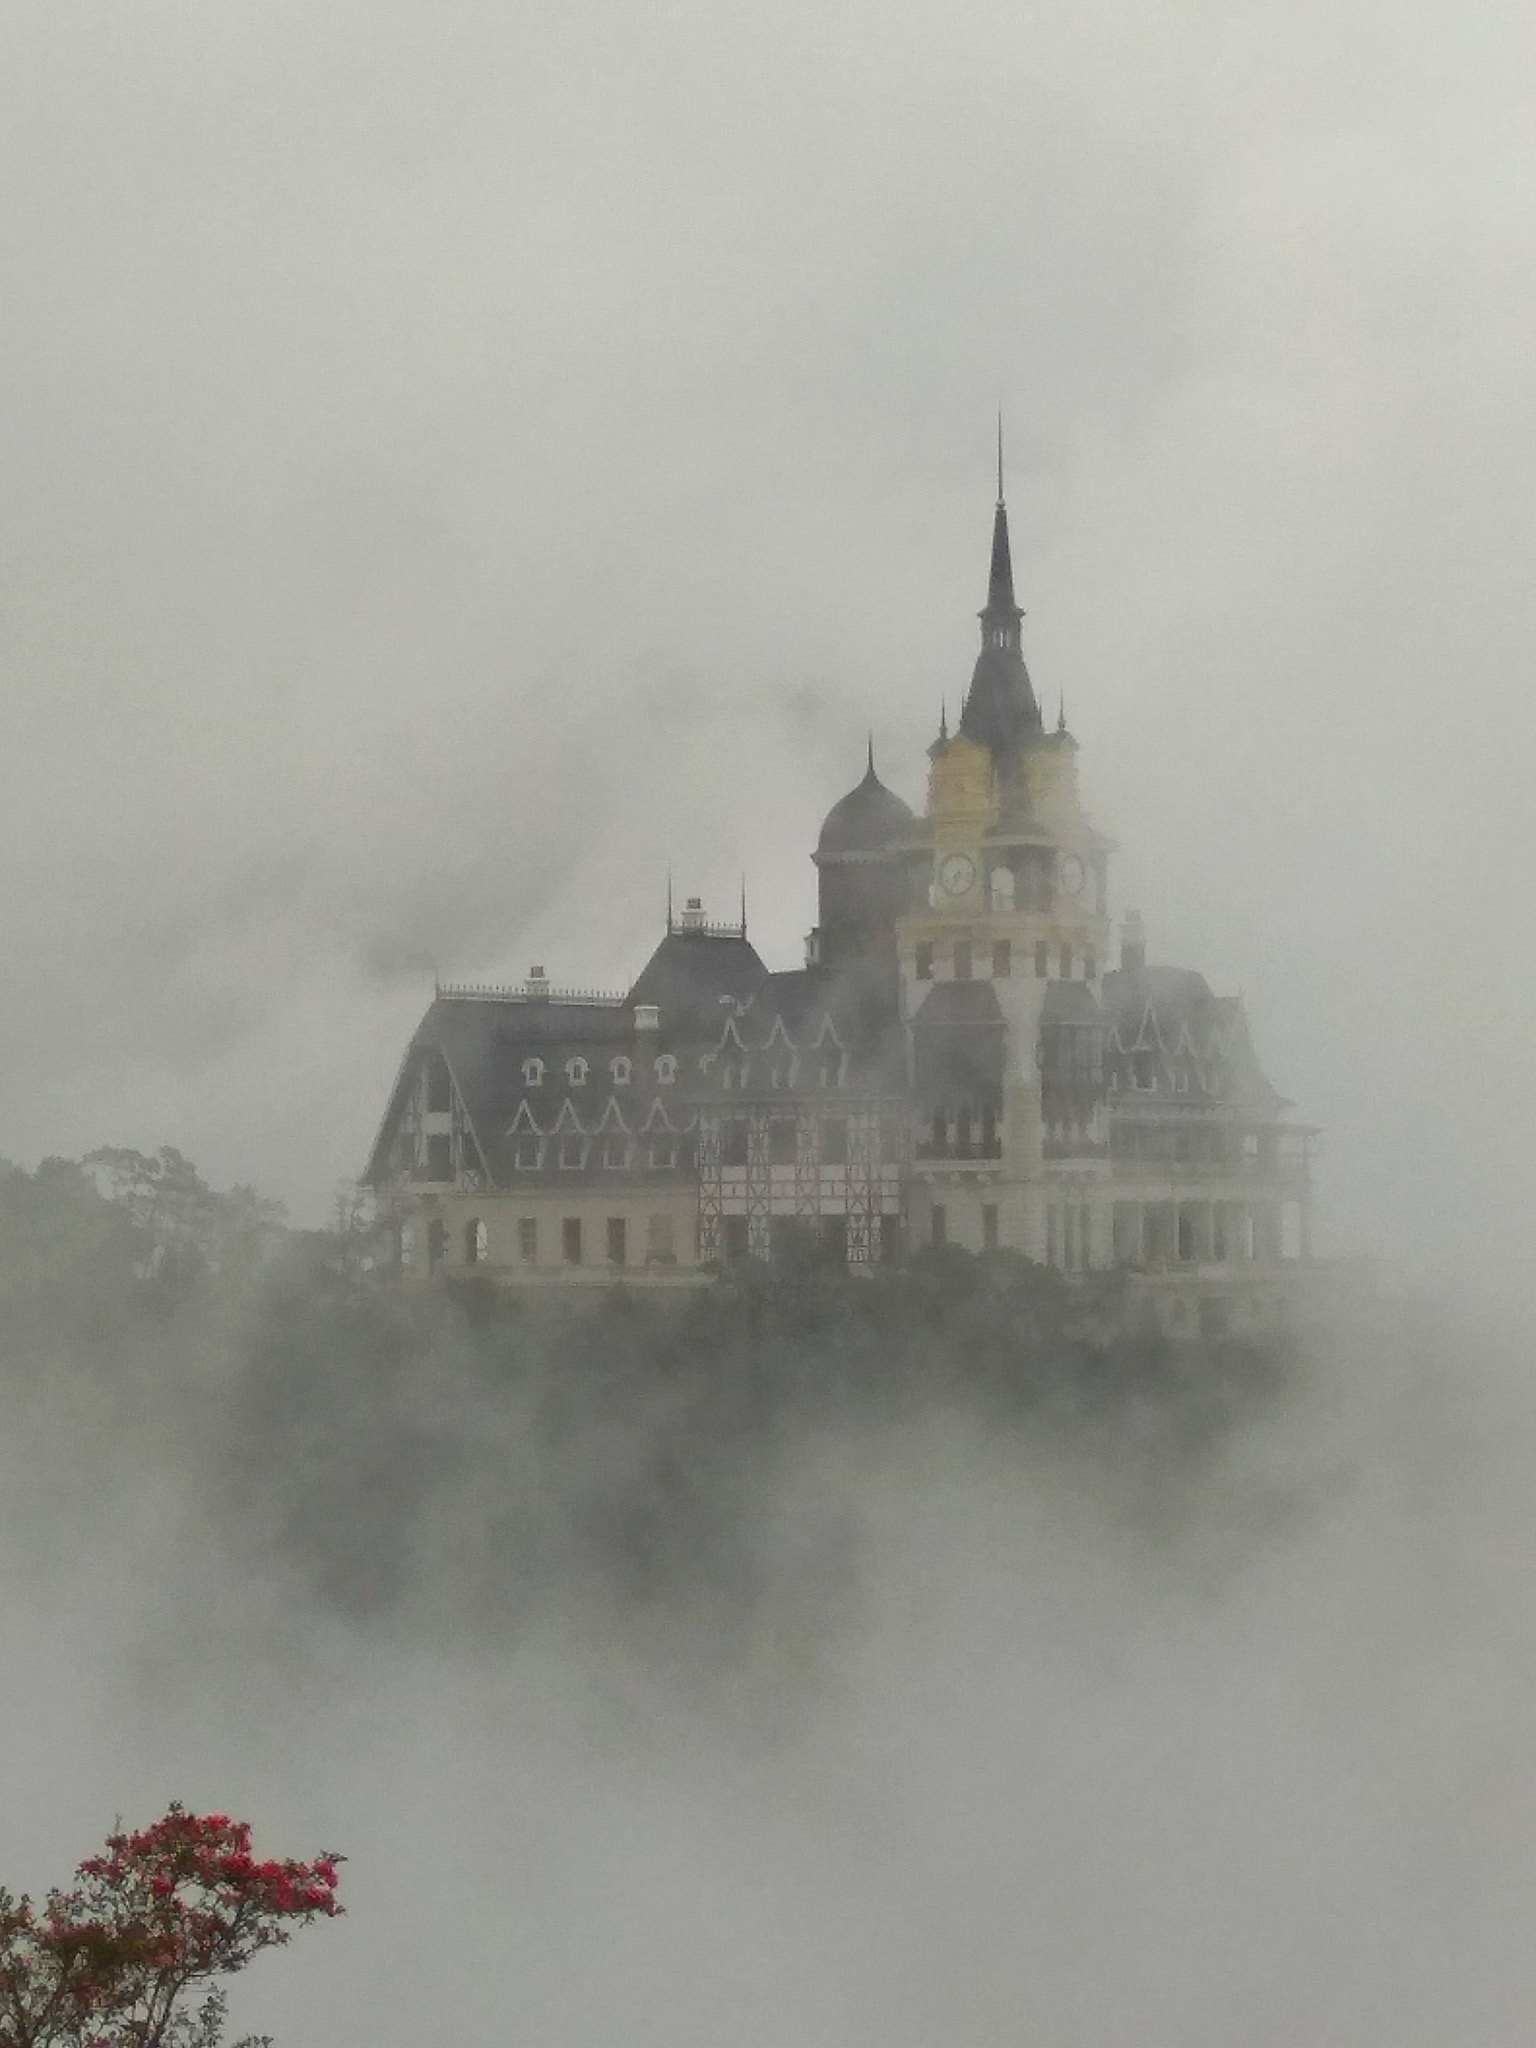 Khi nhiệt ddoooà lâu đài trên đỉnh núi Tam Đảo được bao phủ bởi mây và sương trong ngày tết